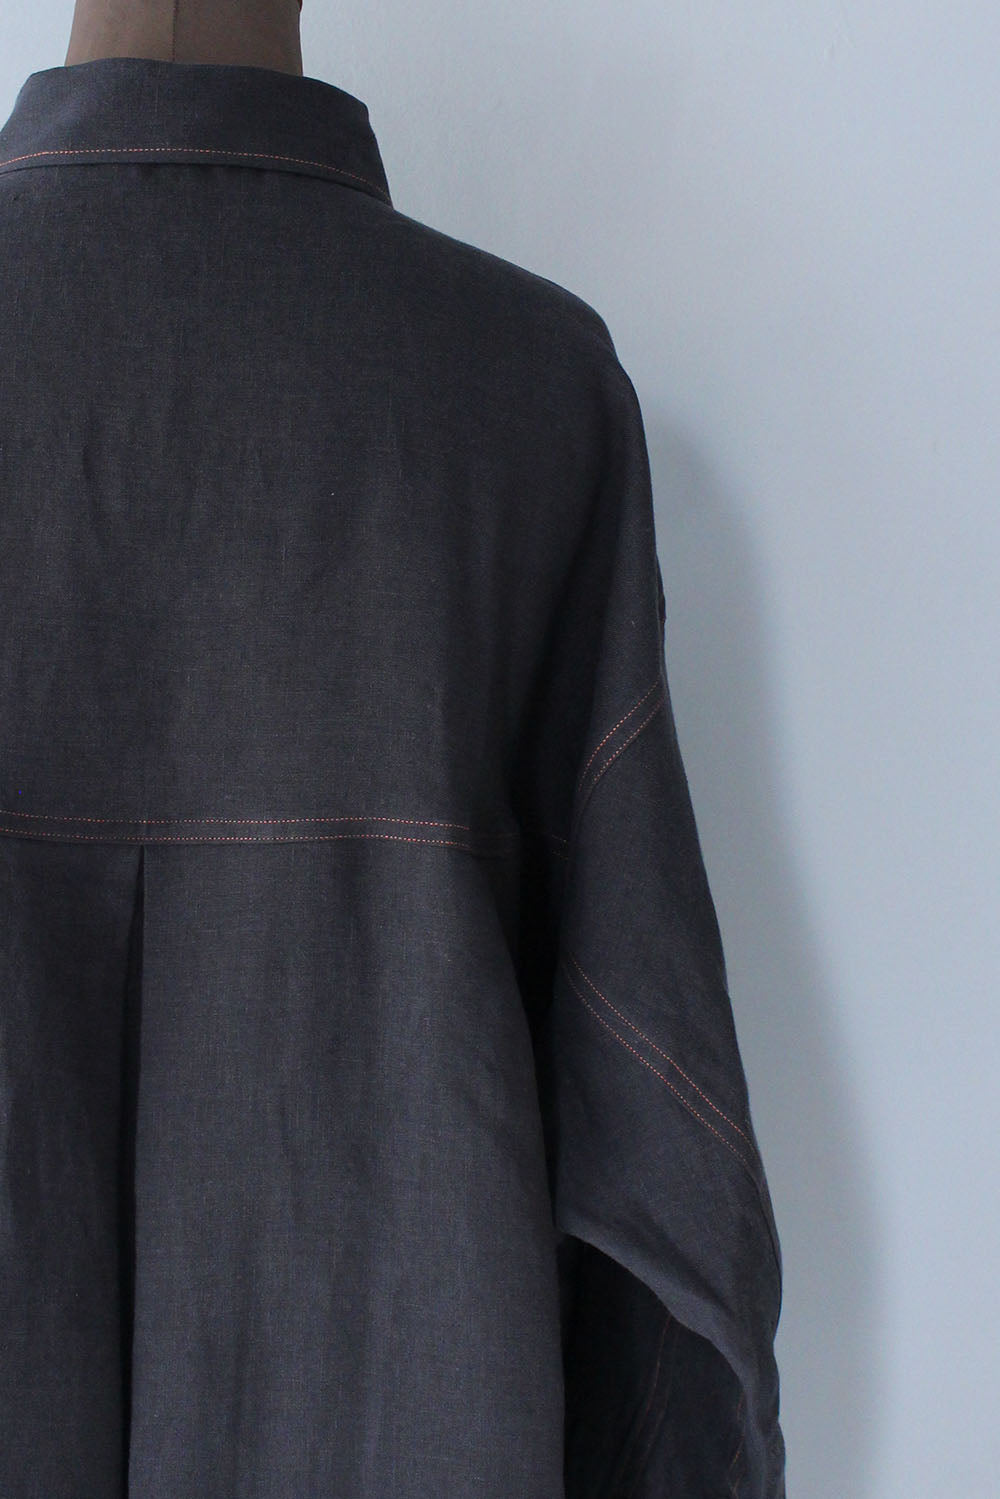 JUN MIKAMI “ linen shirt (charcoal) “